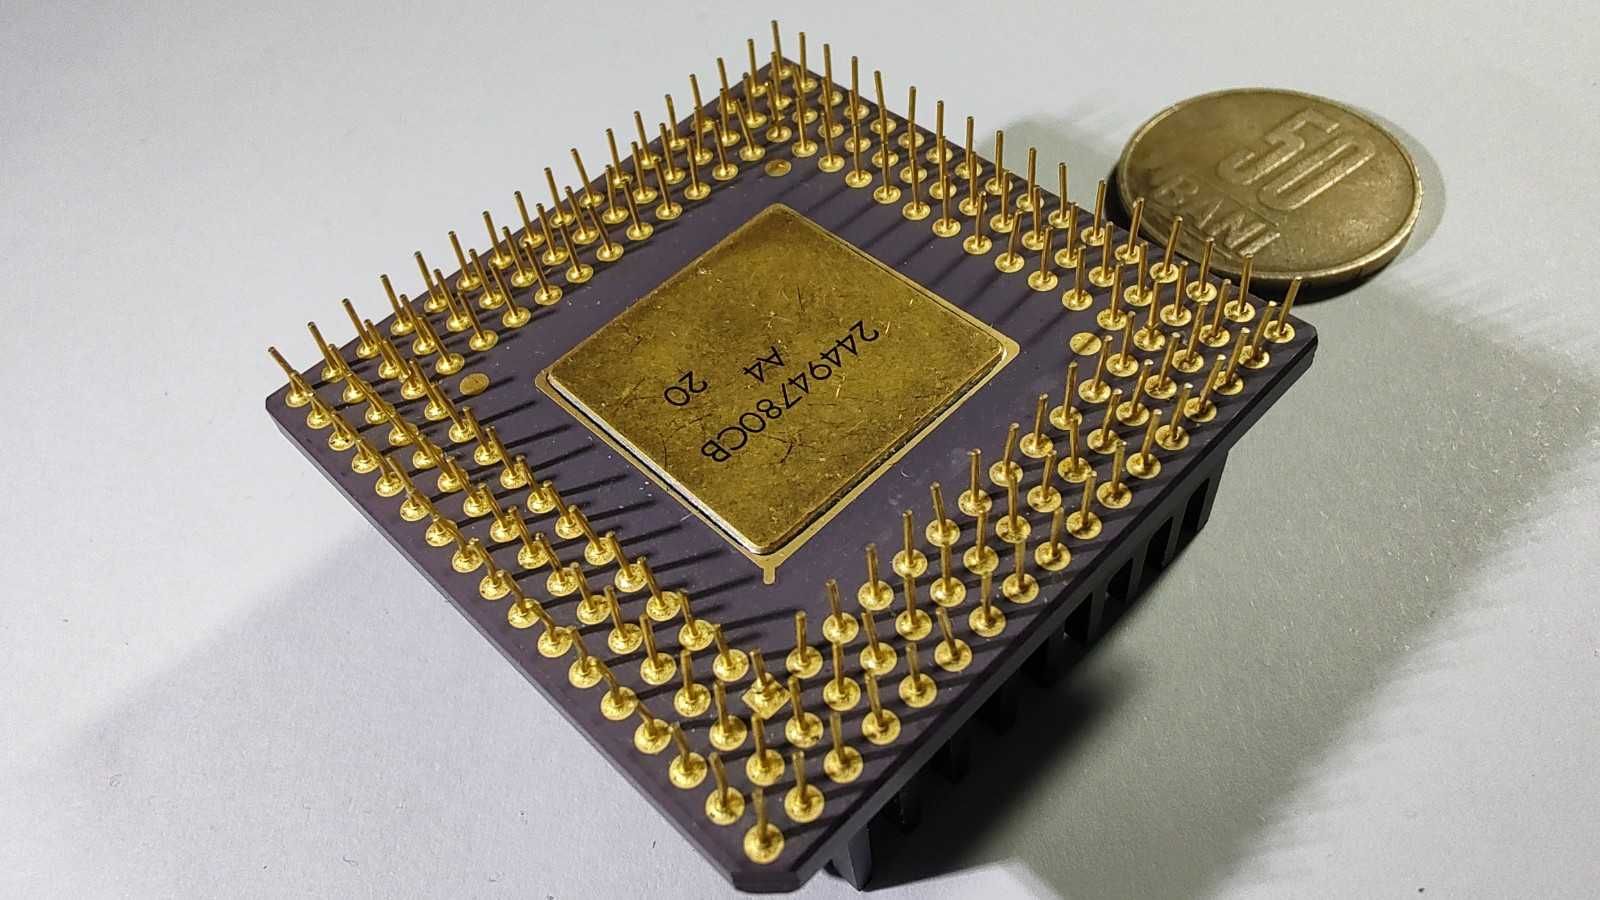 Procesor vintage Intel Overdrive DX40DPR100 100MHz